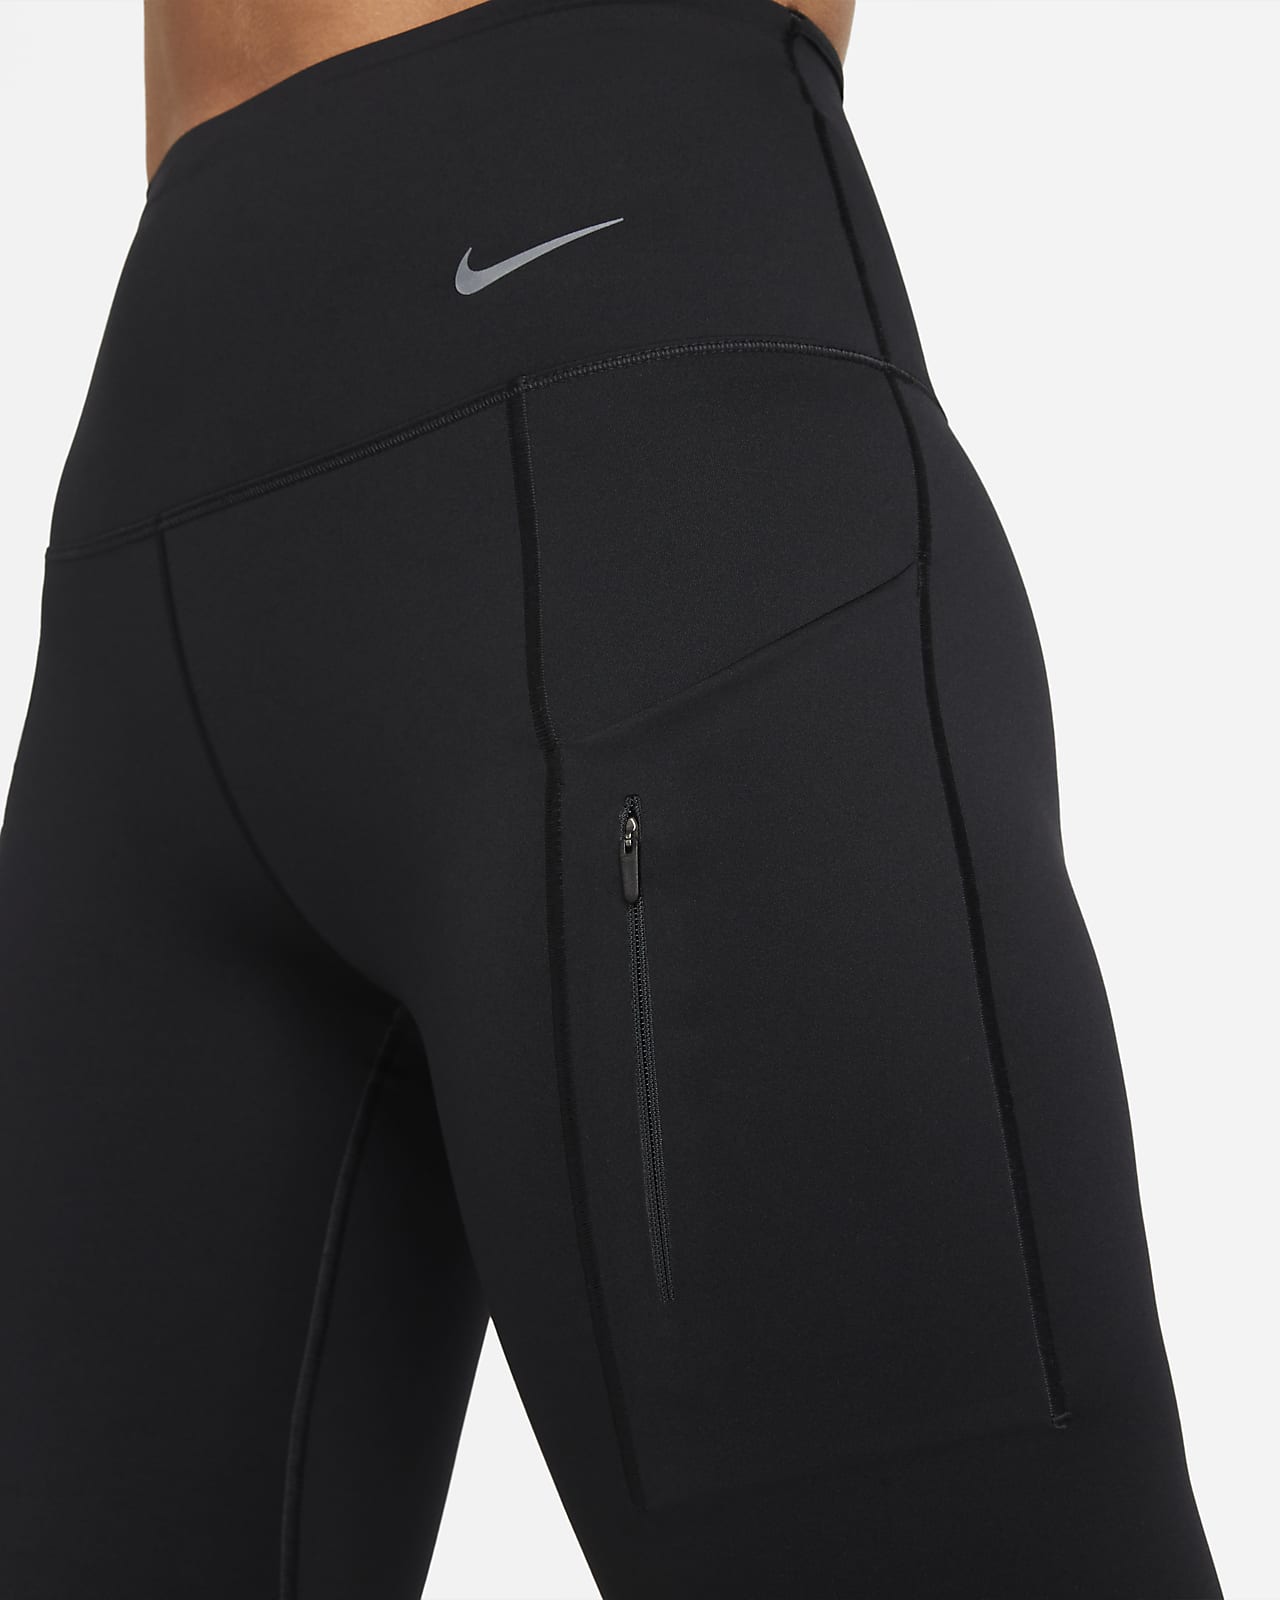 marked Gør alt med min kraft Hyret Nike Go Women's Firm-Support High-Waisted Capri Leggings with Pockets. Nike .com